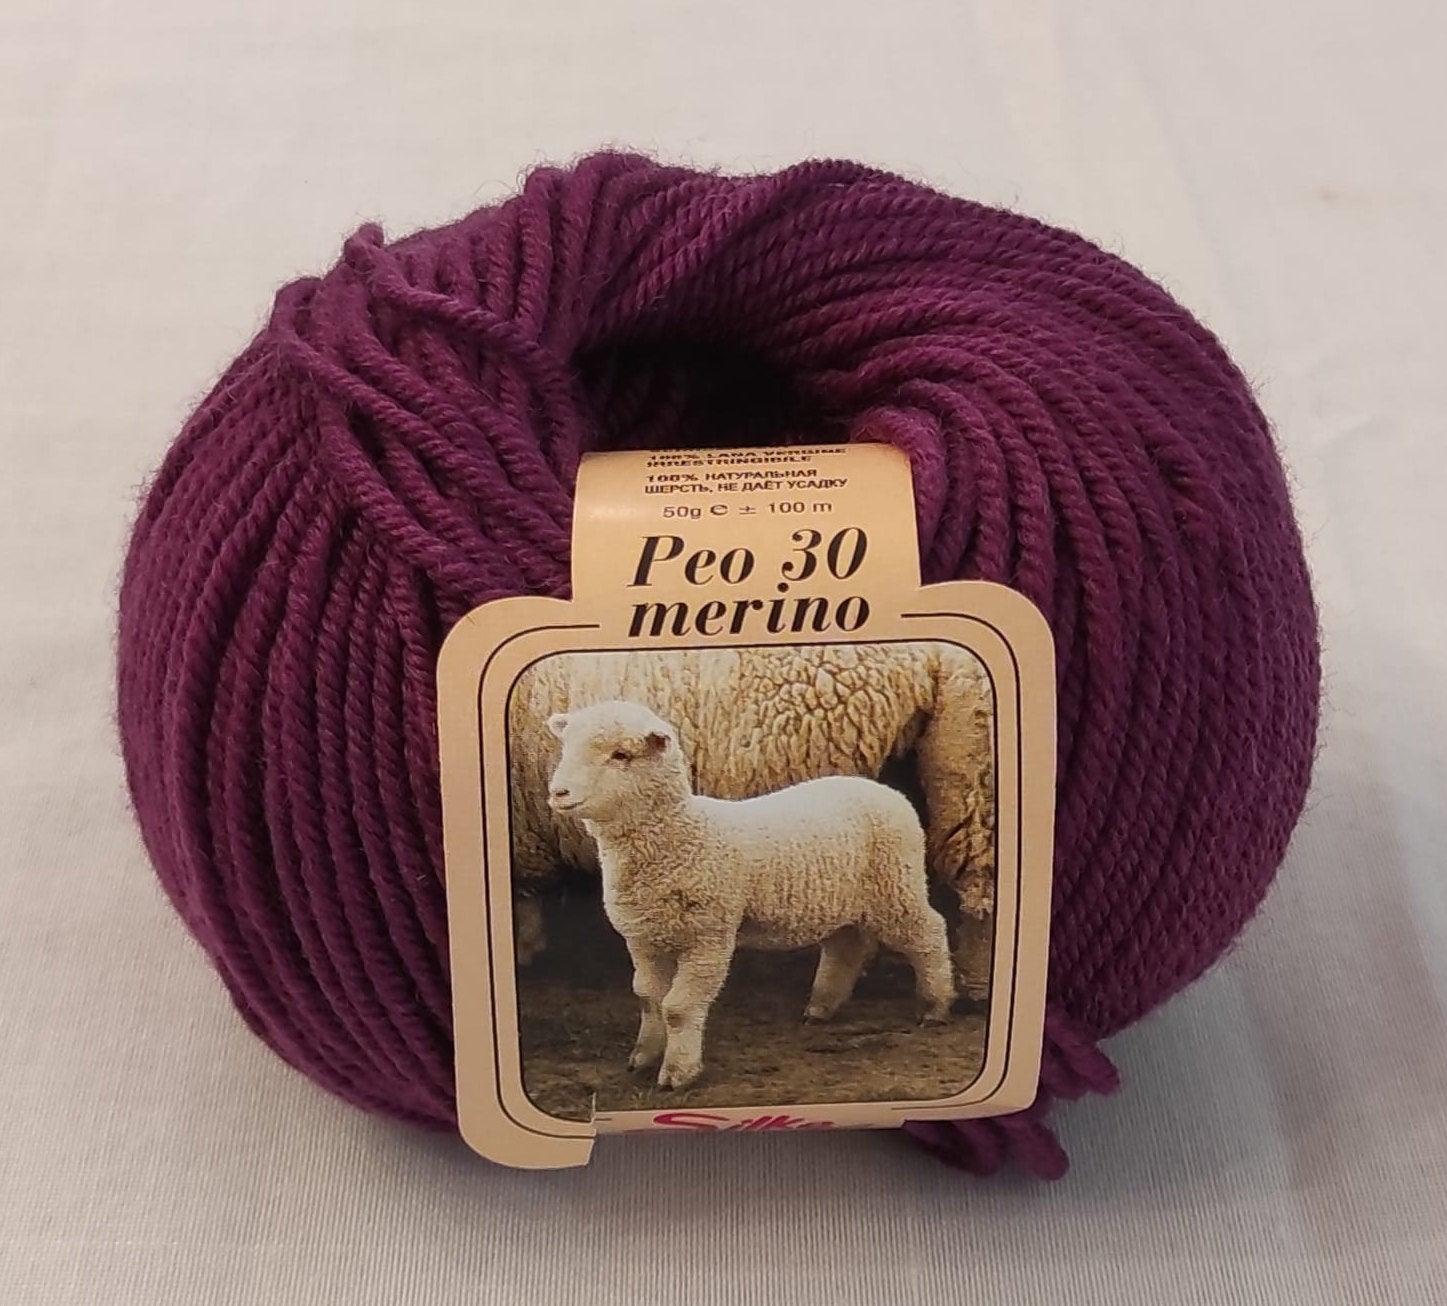 coperta e cuscino XXL rosa cipria, 100 g Spessore lana merino per sciarpa MeriWoolArt 100% lana merino per lavoro a maglia e uncinetto con filato spesso 2 cm 